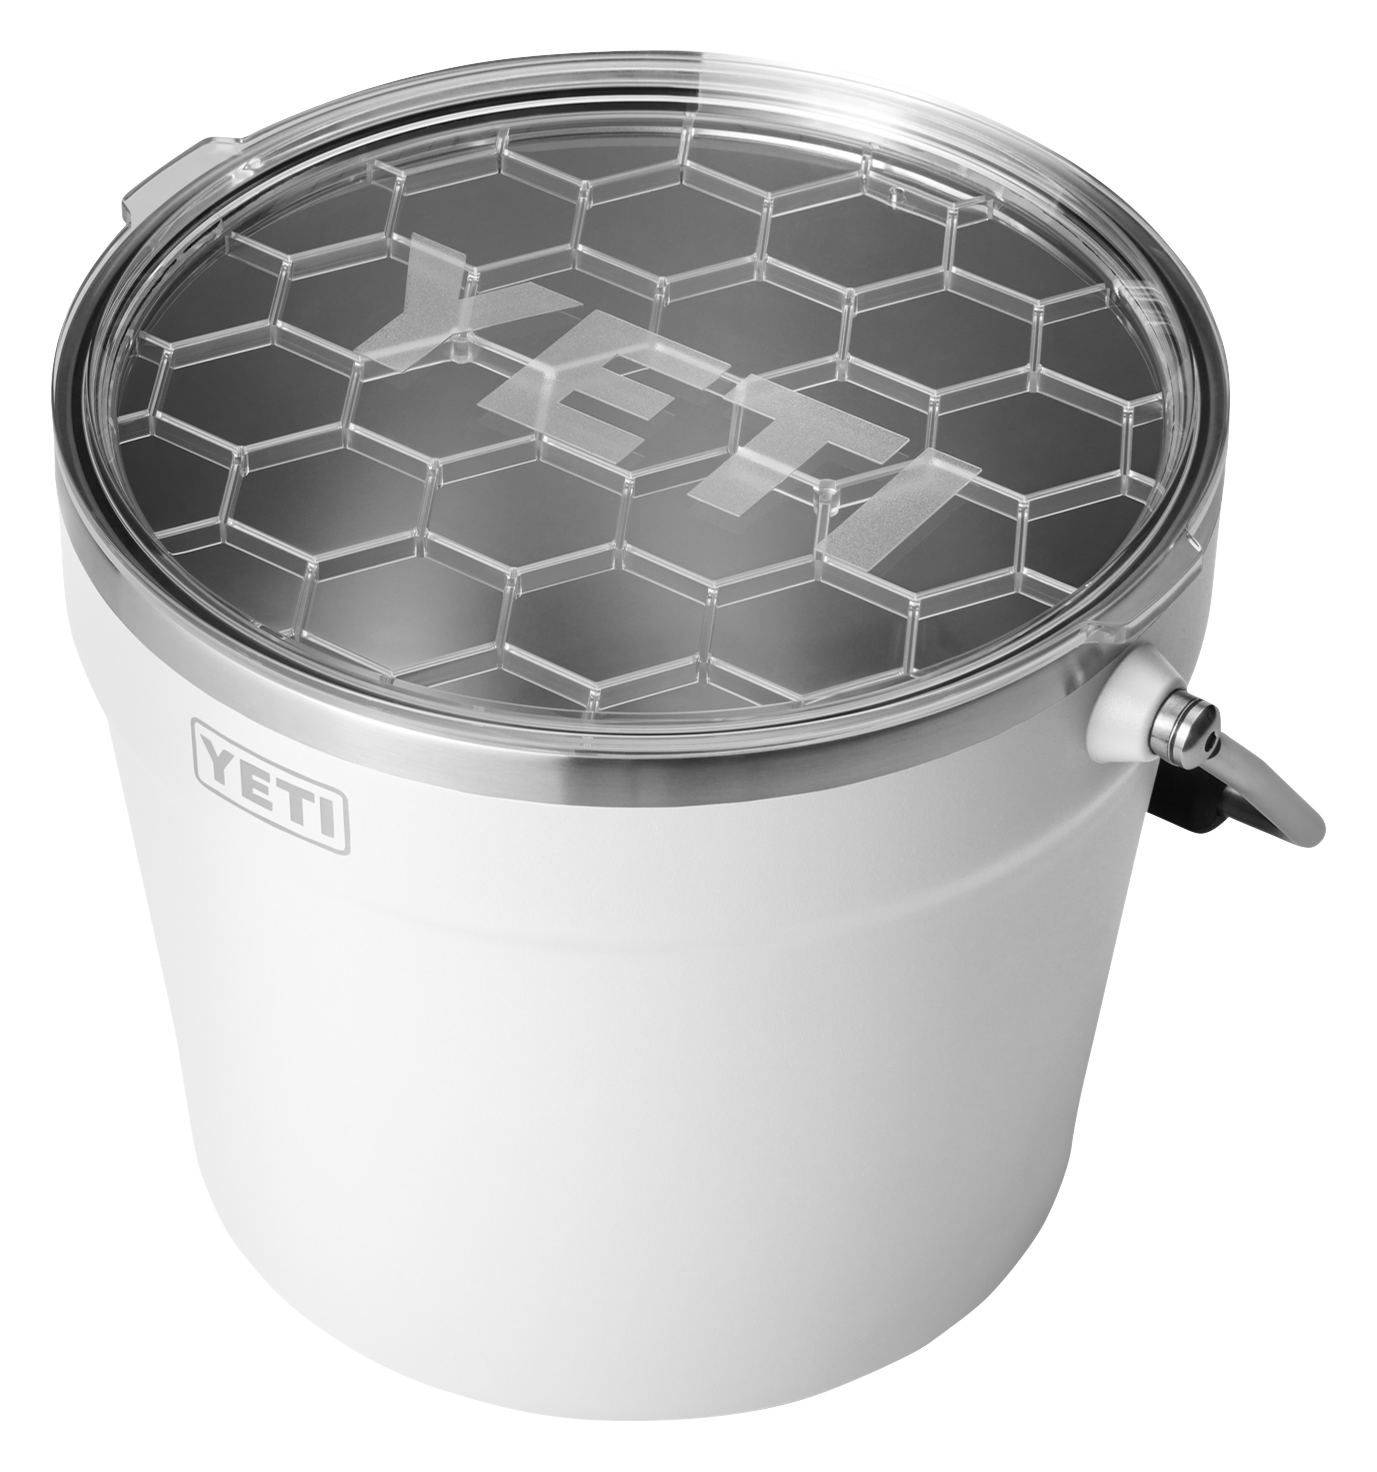 YETI Rambler Beverage Bucket, Double-Wall Vacuum Insulated Ice Bucket with  Lid, Navy